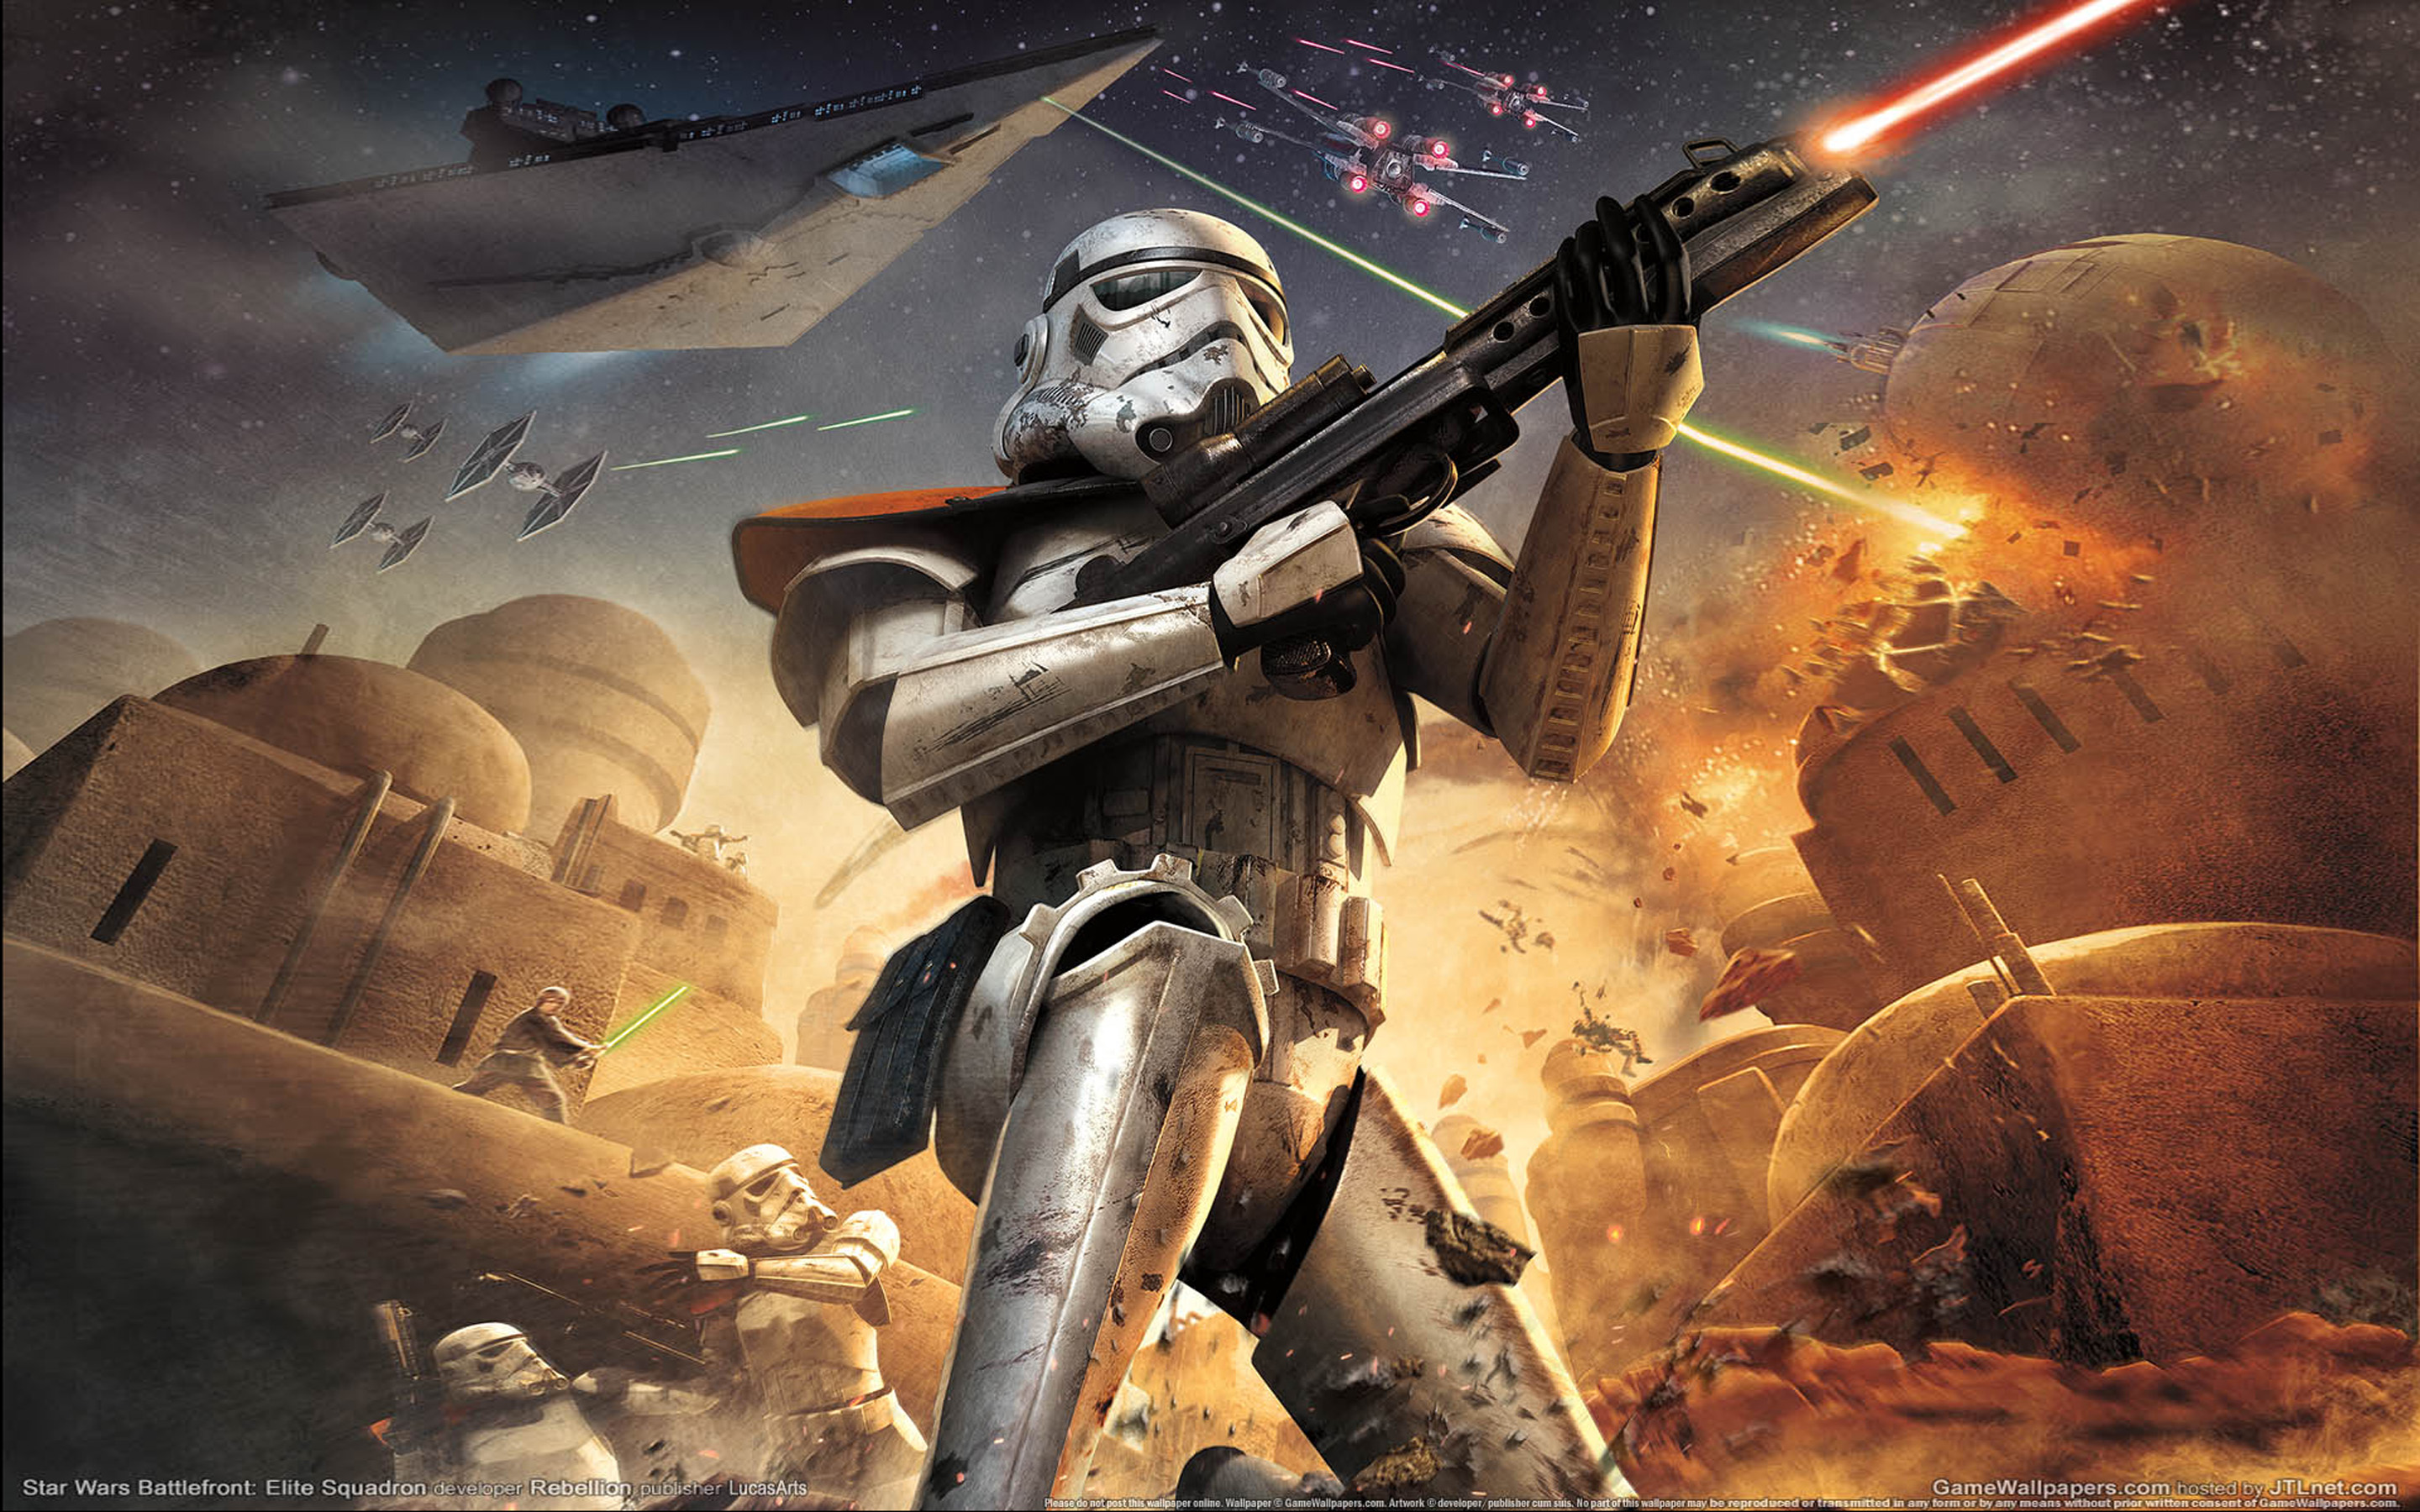 Суть звездных войн. Battlefront Elite Squadron. Галактическая Империя Звездные войны. Star Wars Battlefront Империя. Звёздные войны: Империя на войне.